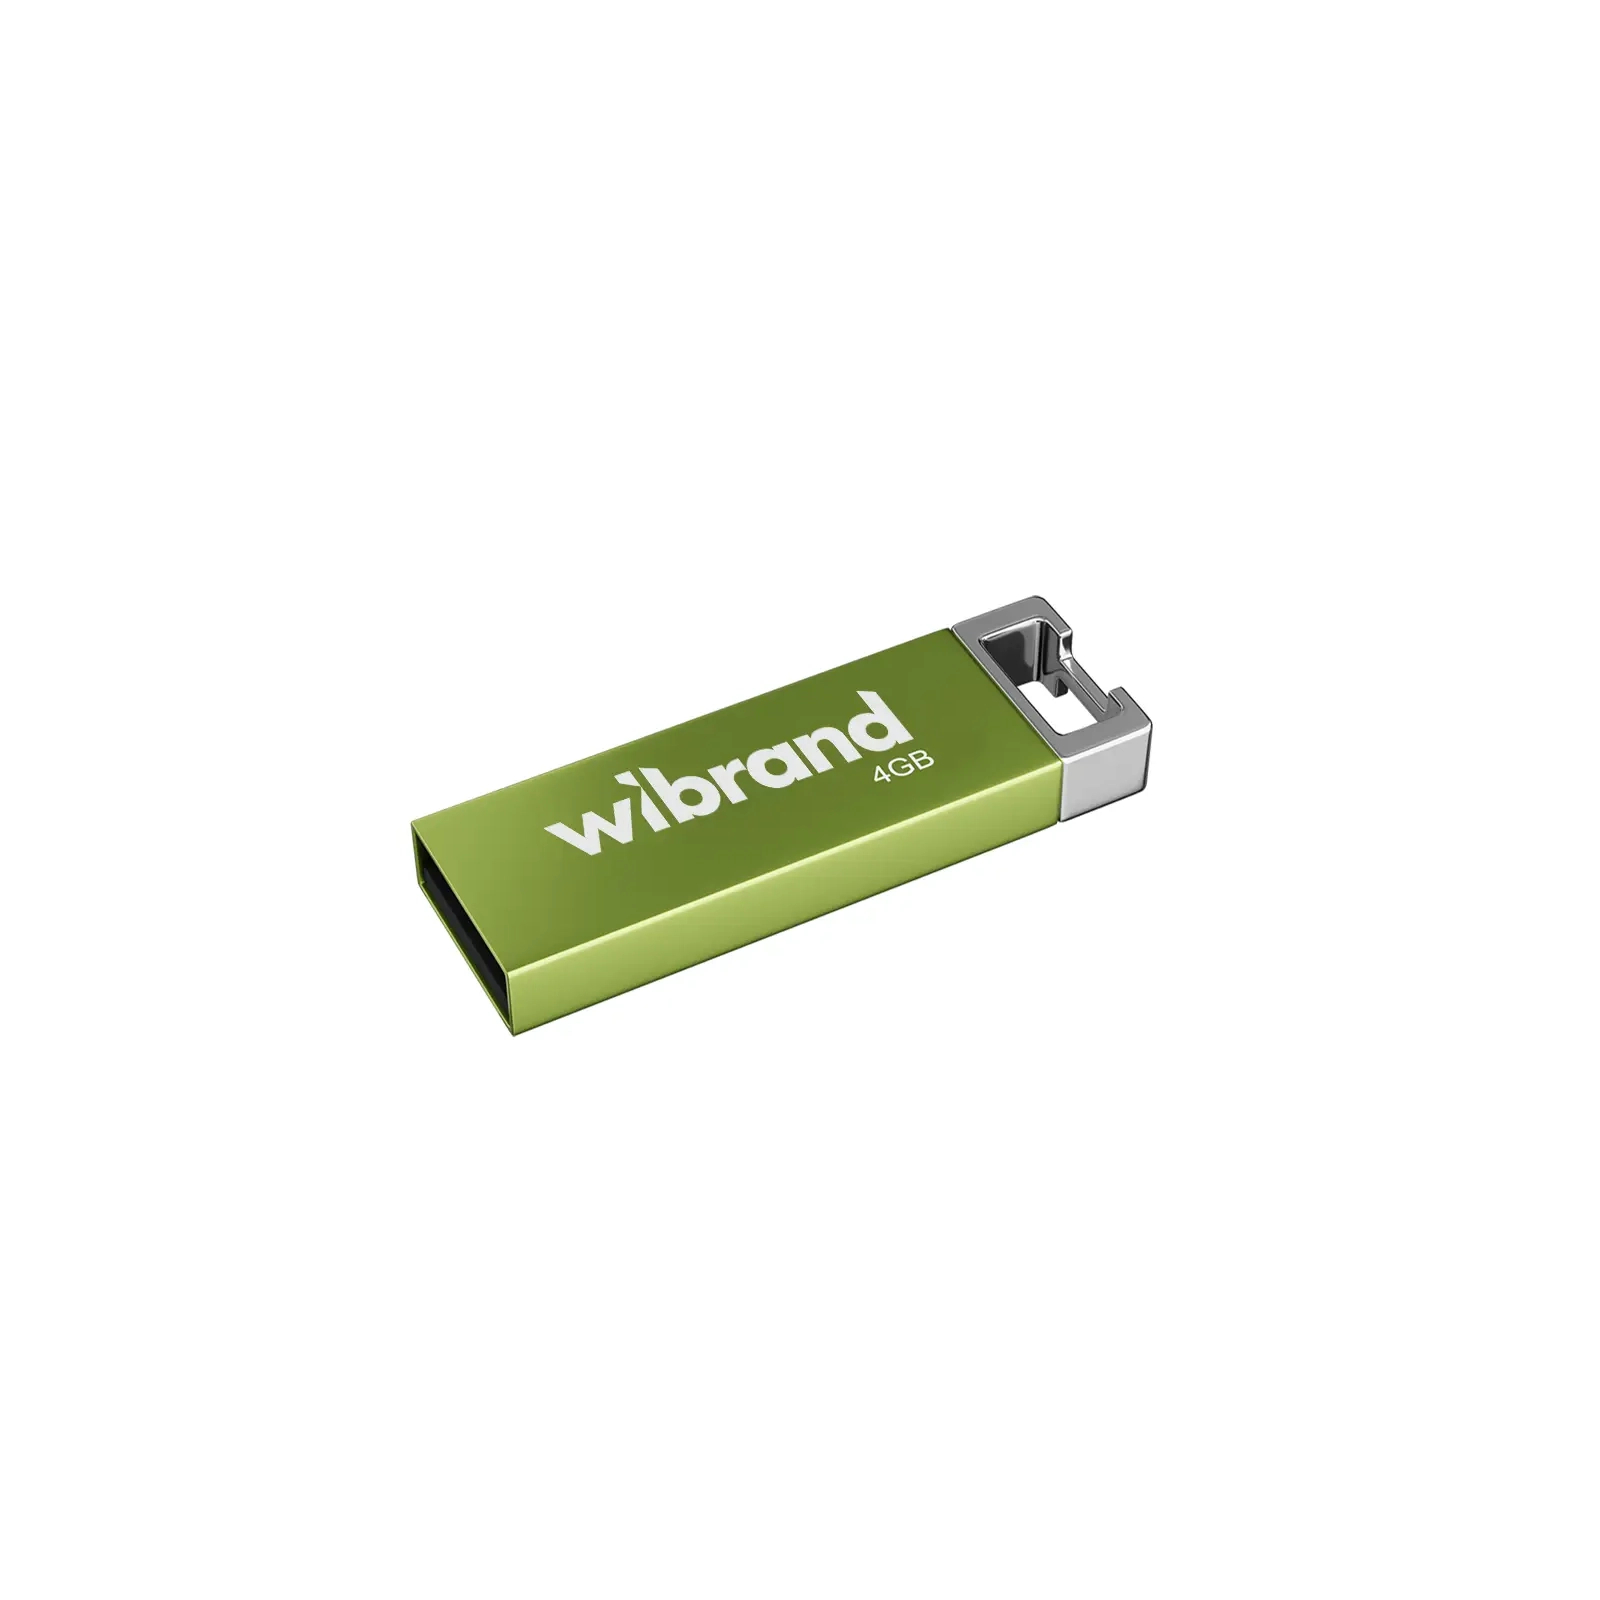 USB флеш накопитель Wibrand 4GB Chameleon Green USB 2.0 (WI2.0/CH4U6LG)